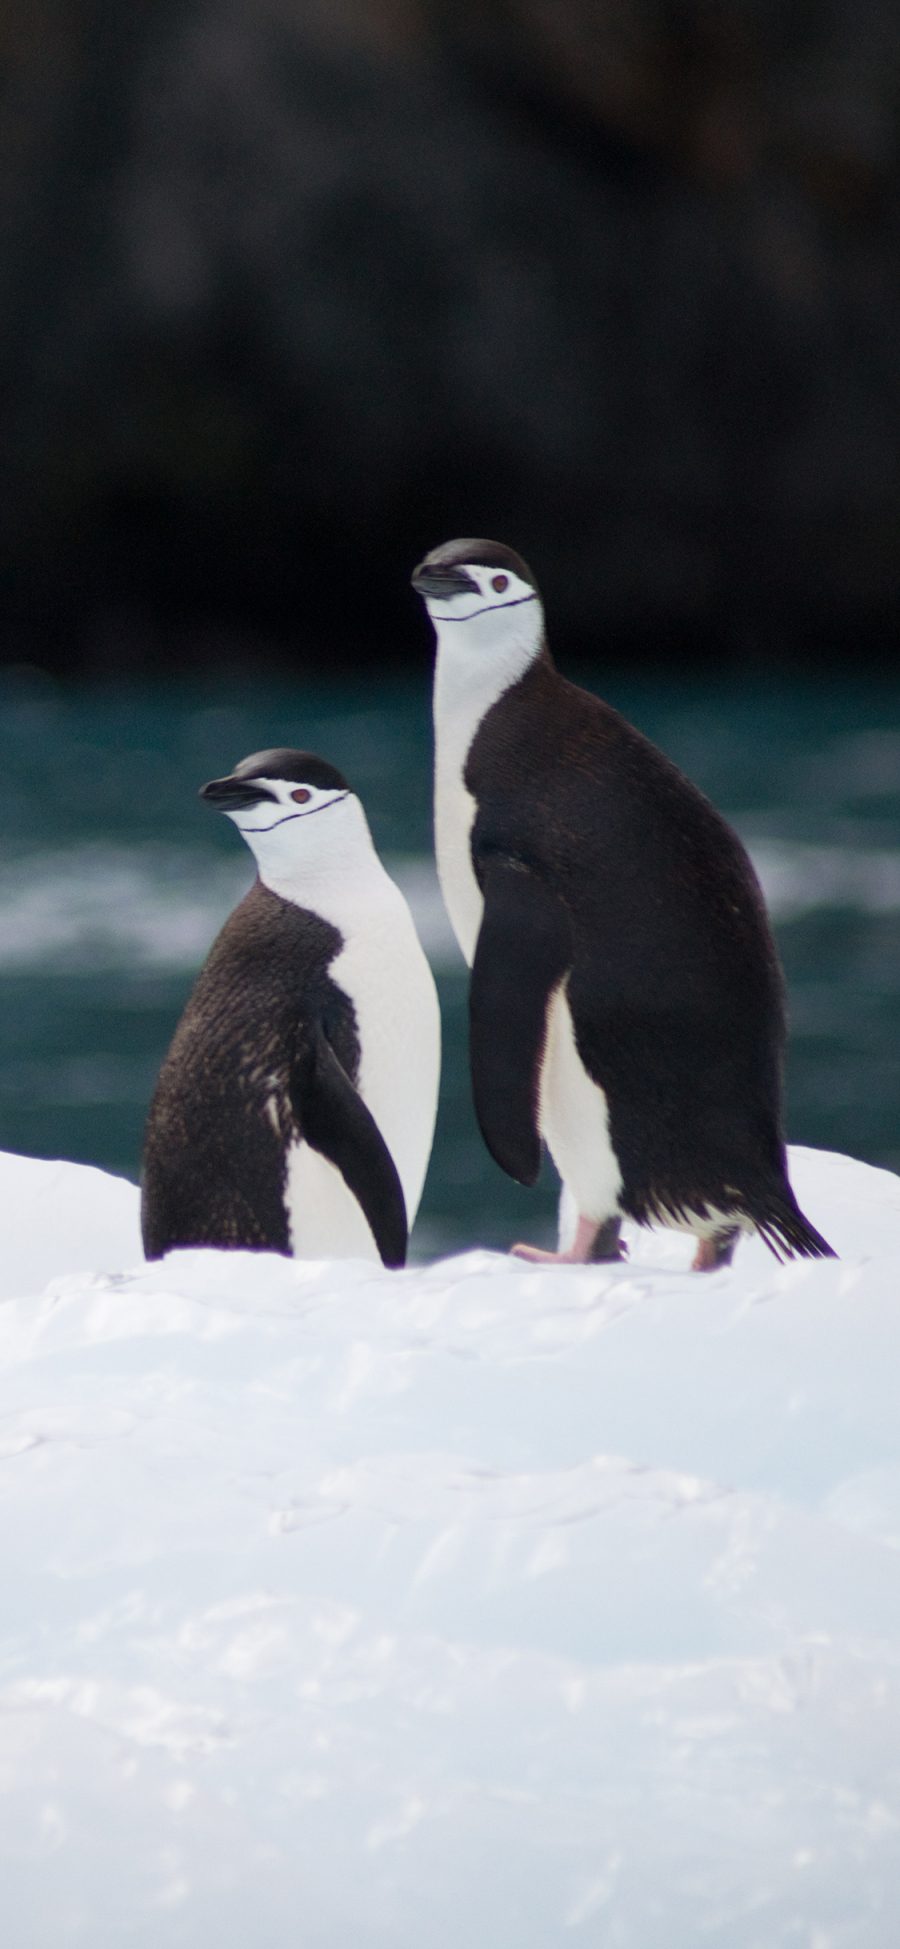 [2436×1125]南极 企鹅 保护动物 冰块 苹果手机壁纸图片